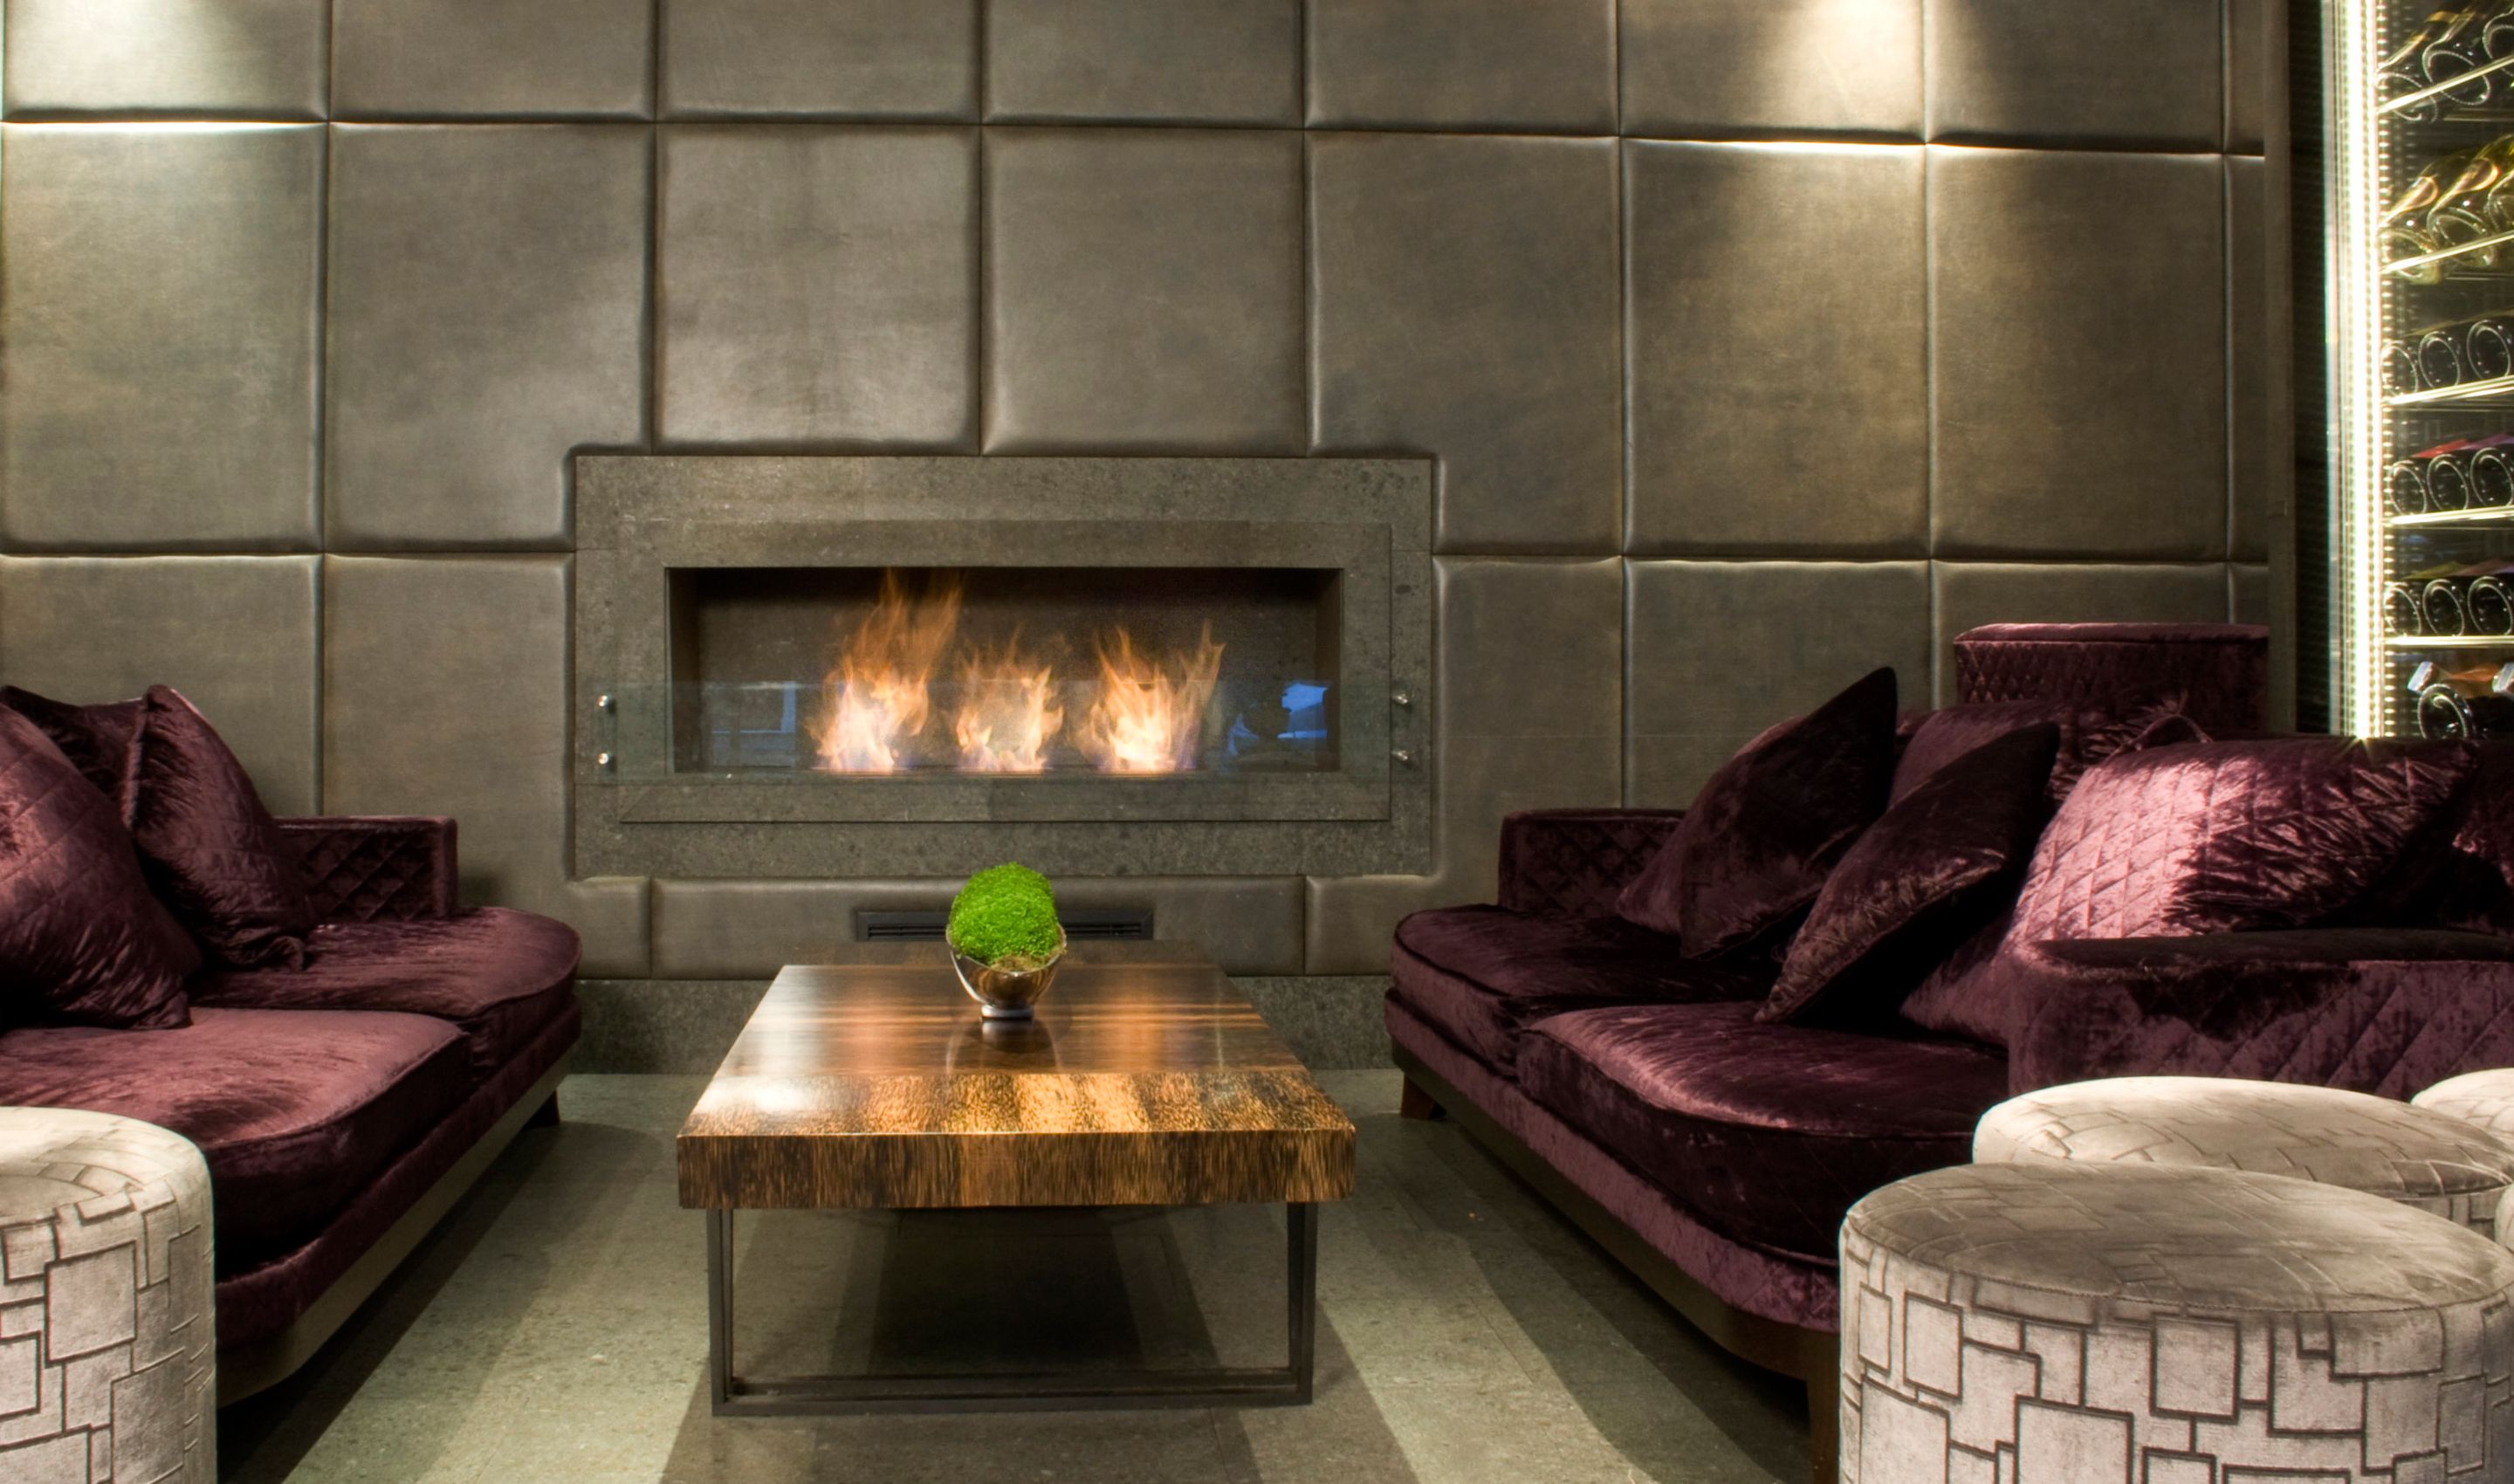 Fireplace Base New Aka Hotel Instalation Indoor Fireplace Ideas Design